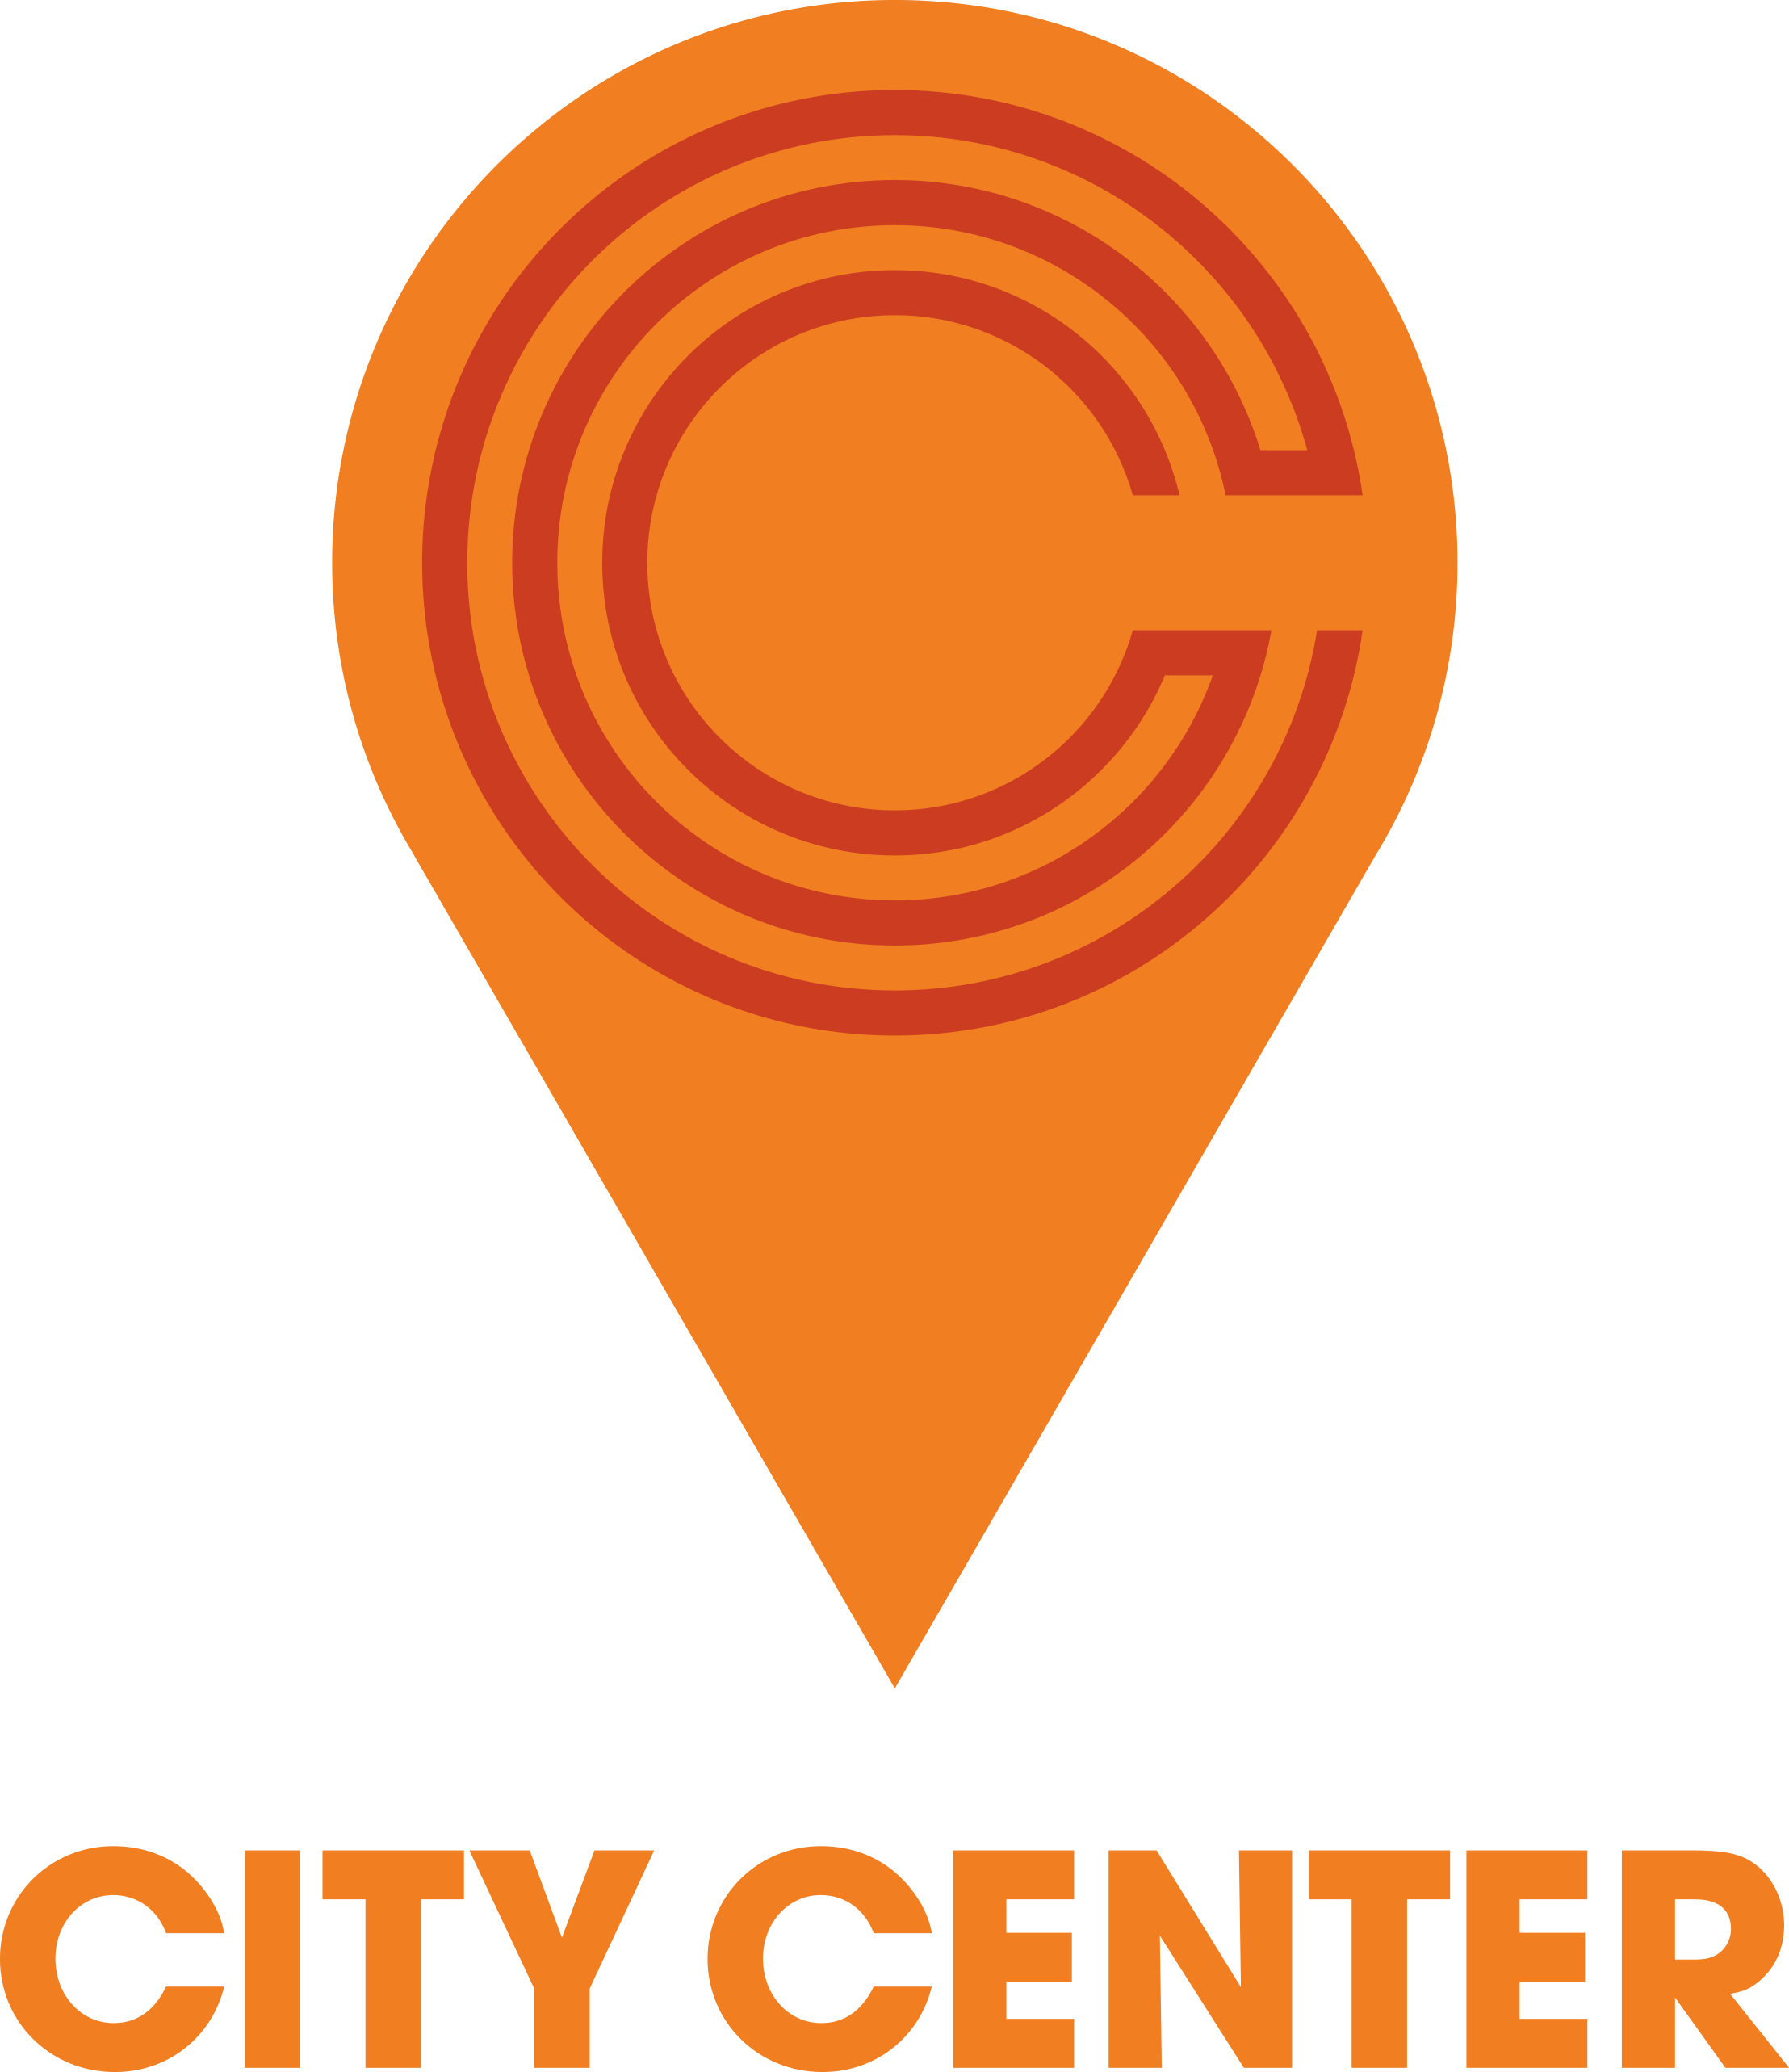 City Center - Branding